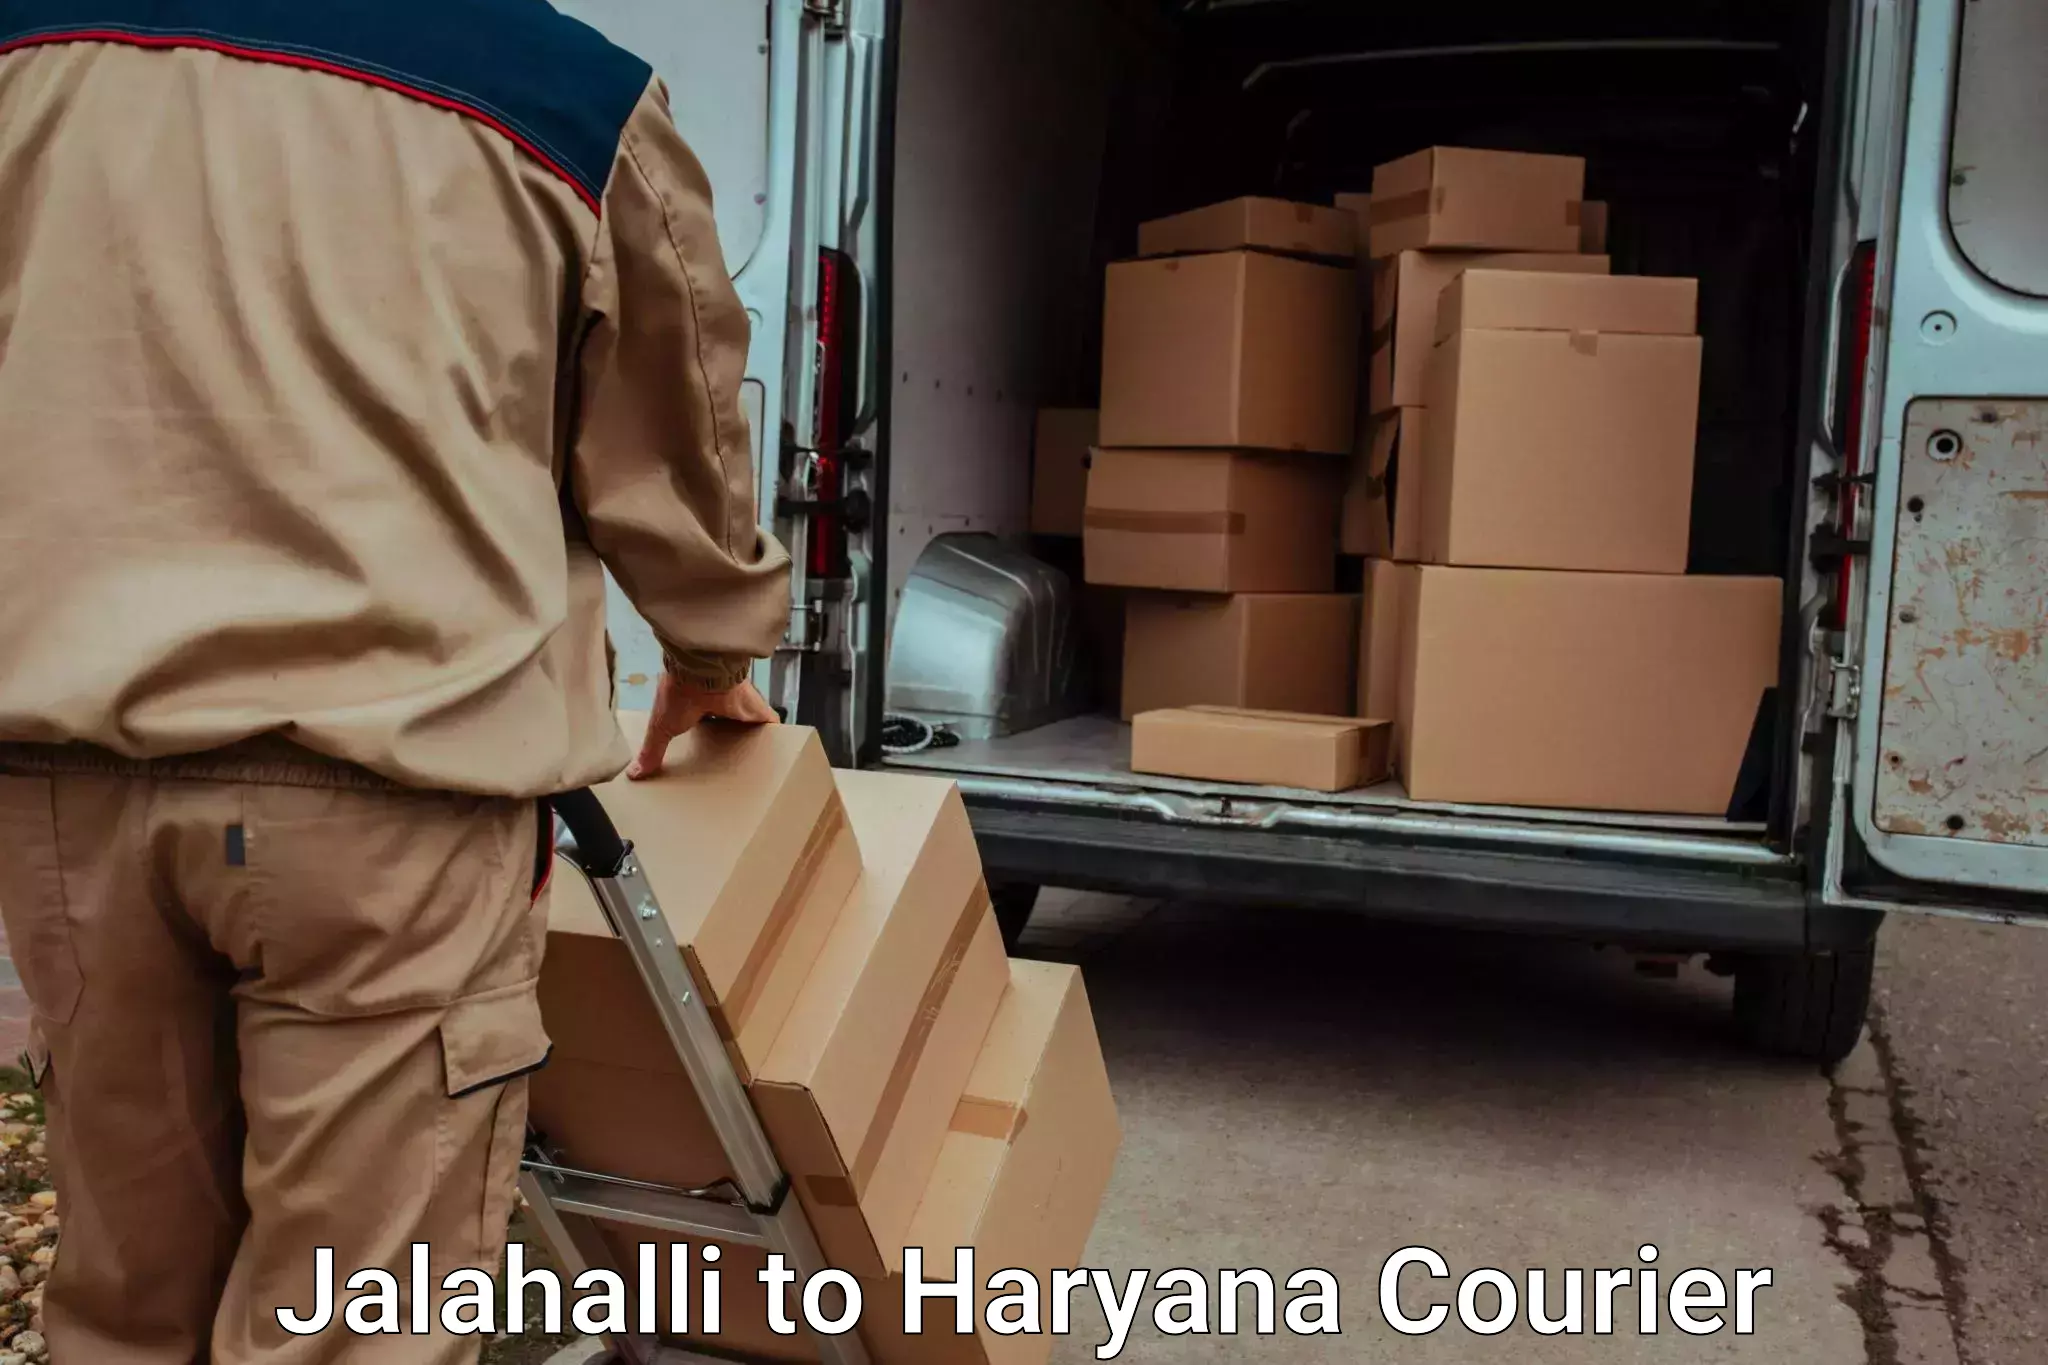 Automated luggage transport Jalahalli to Charkhi Dadri